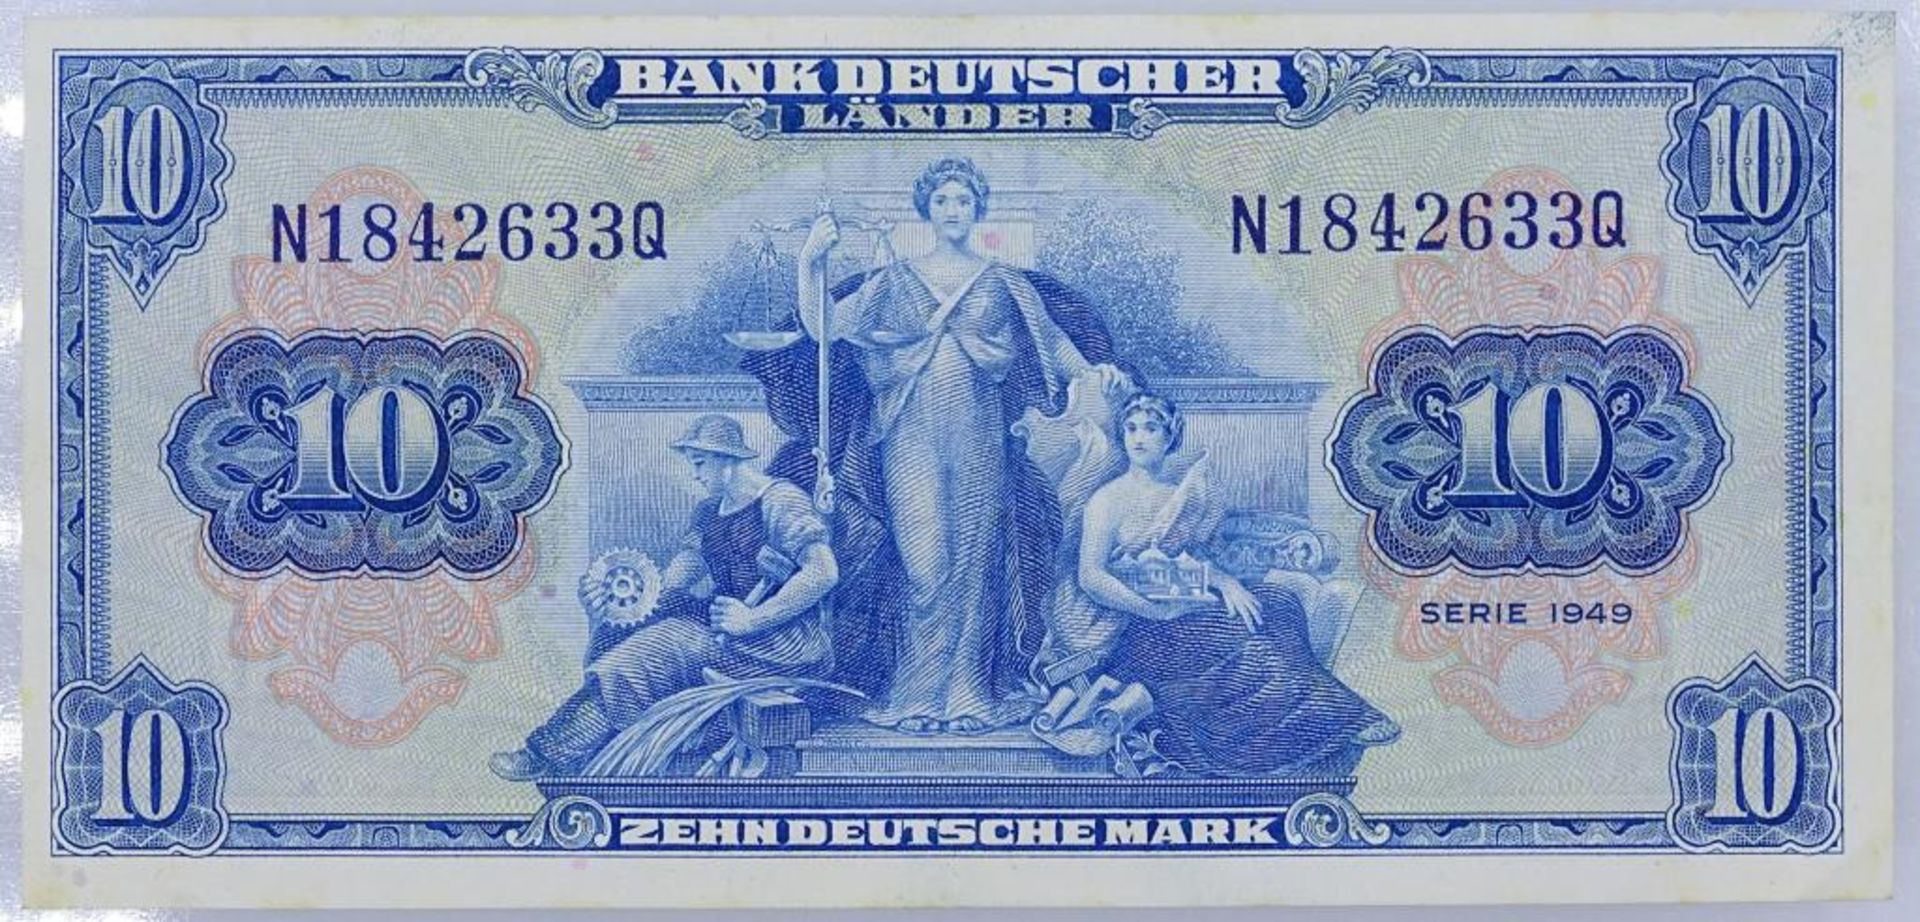 10 Deutsche Mark - 1949 - Bank Deutscher Länder. N1842633- - -22.61 % buyer's premium on the